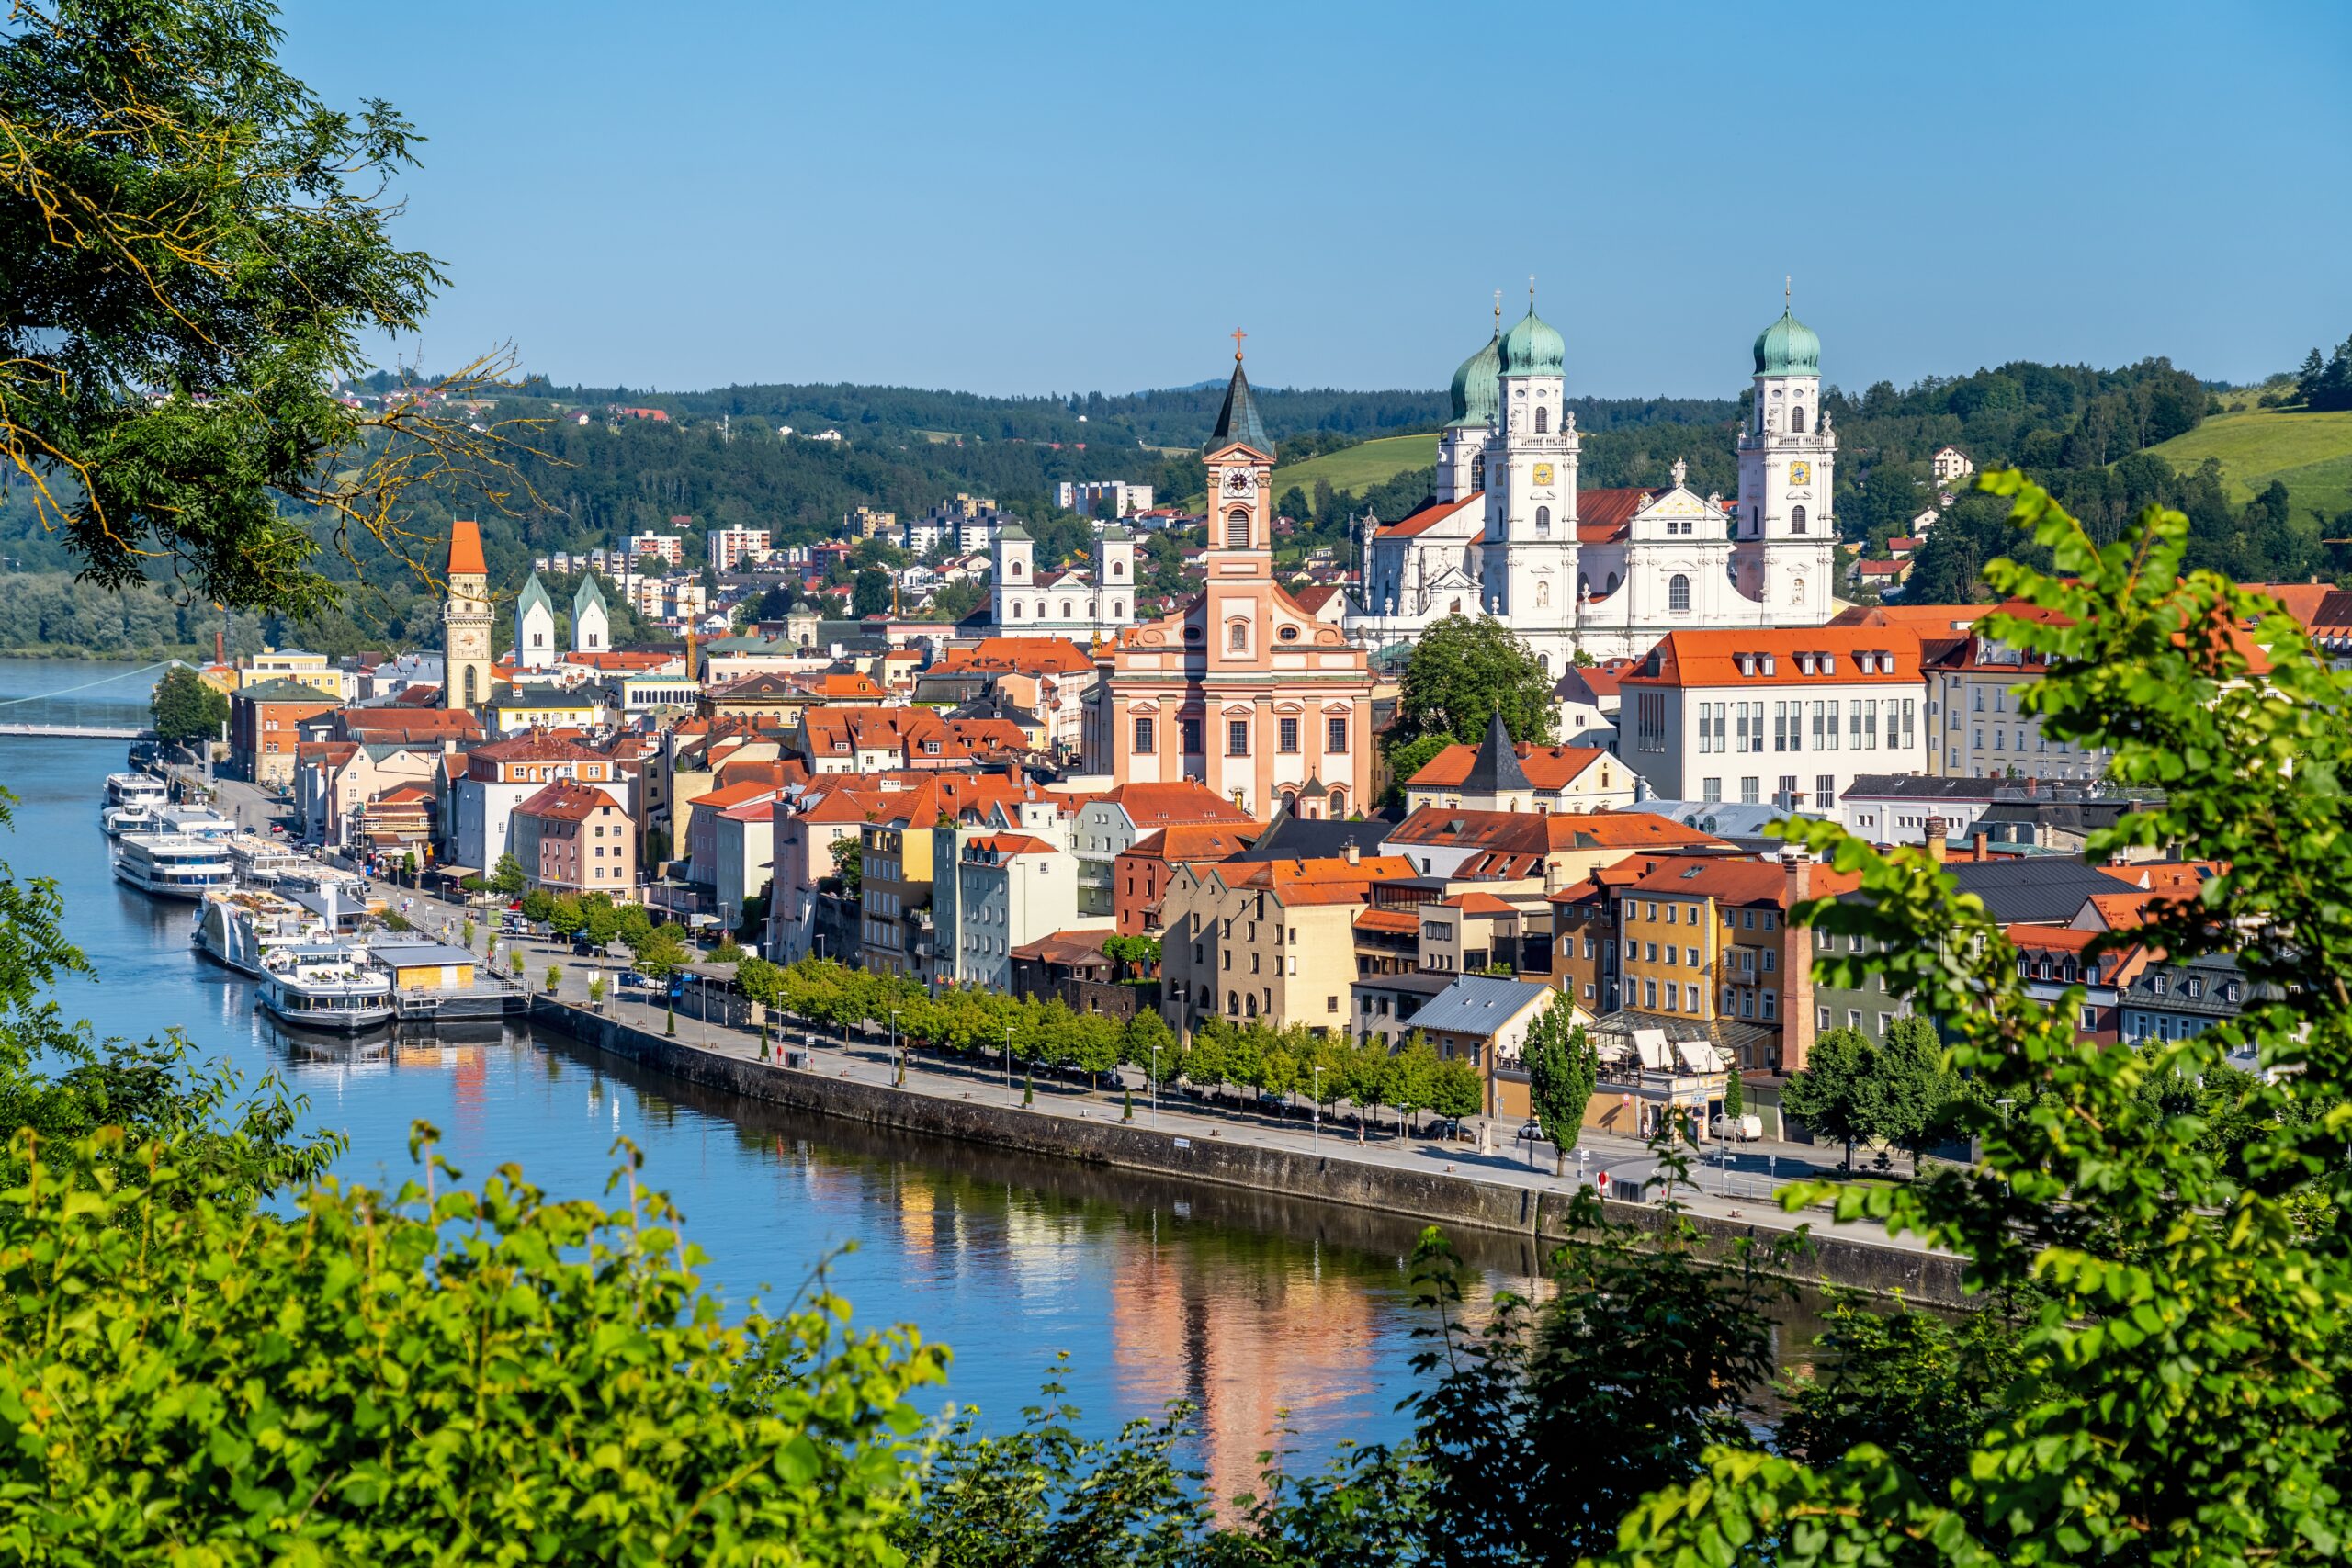 Rundflug über Passau